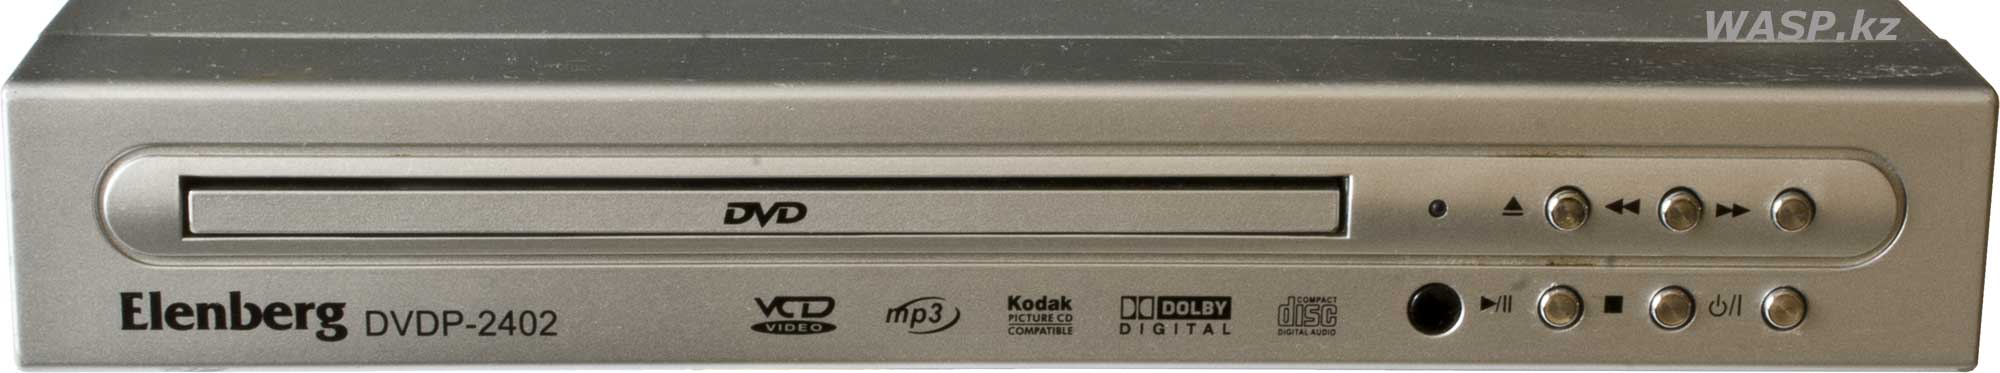 Elenberg DVDP-2402 передняя панель плеера